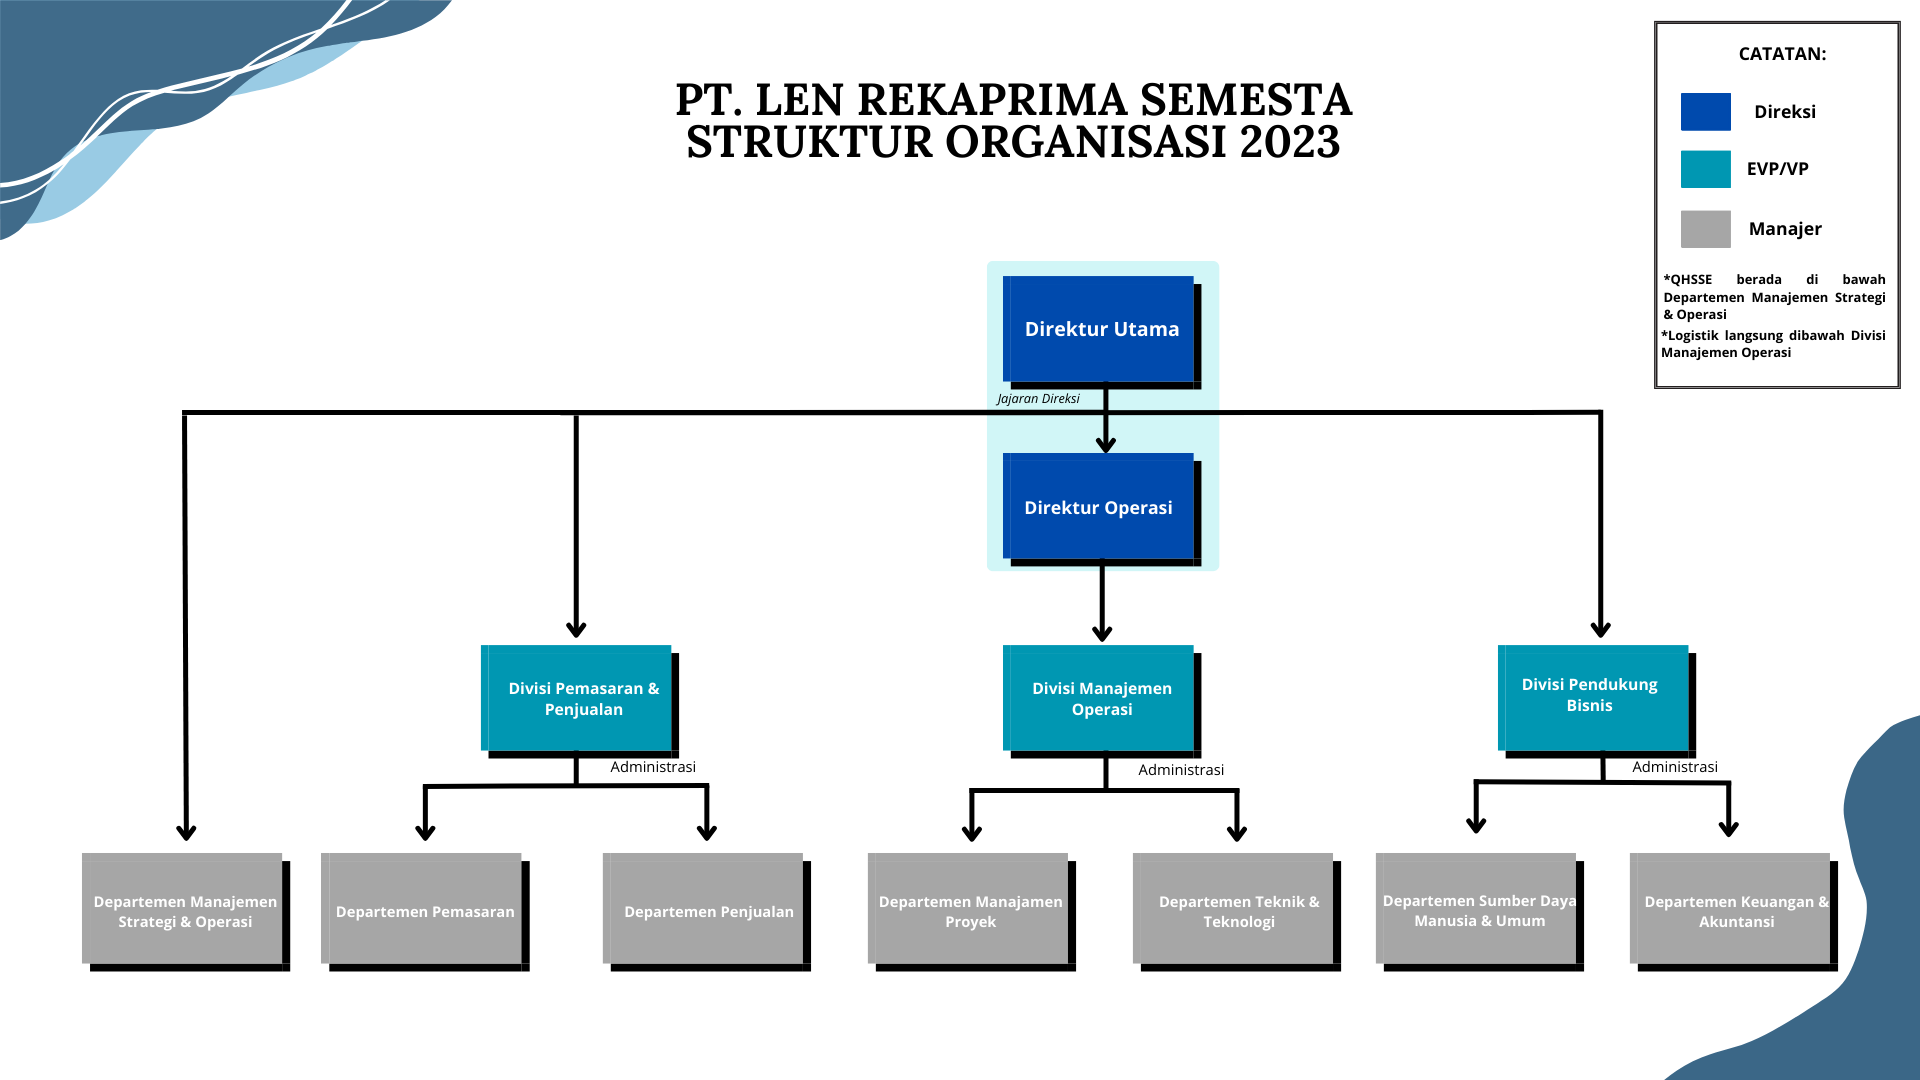 structure organization